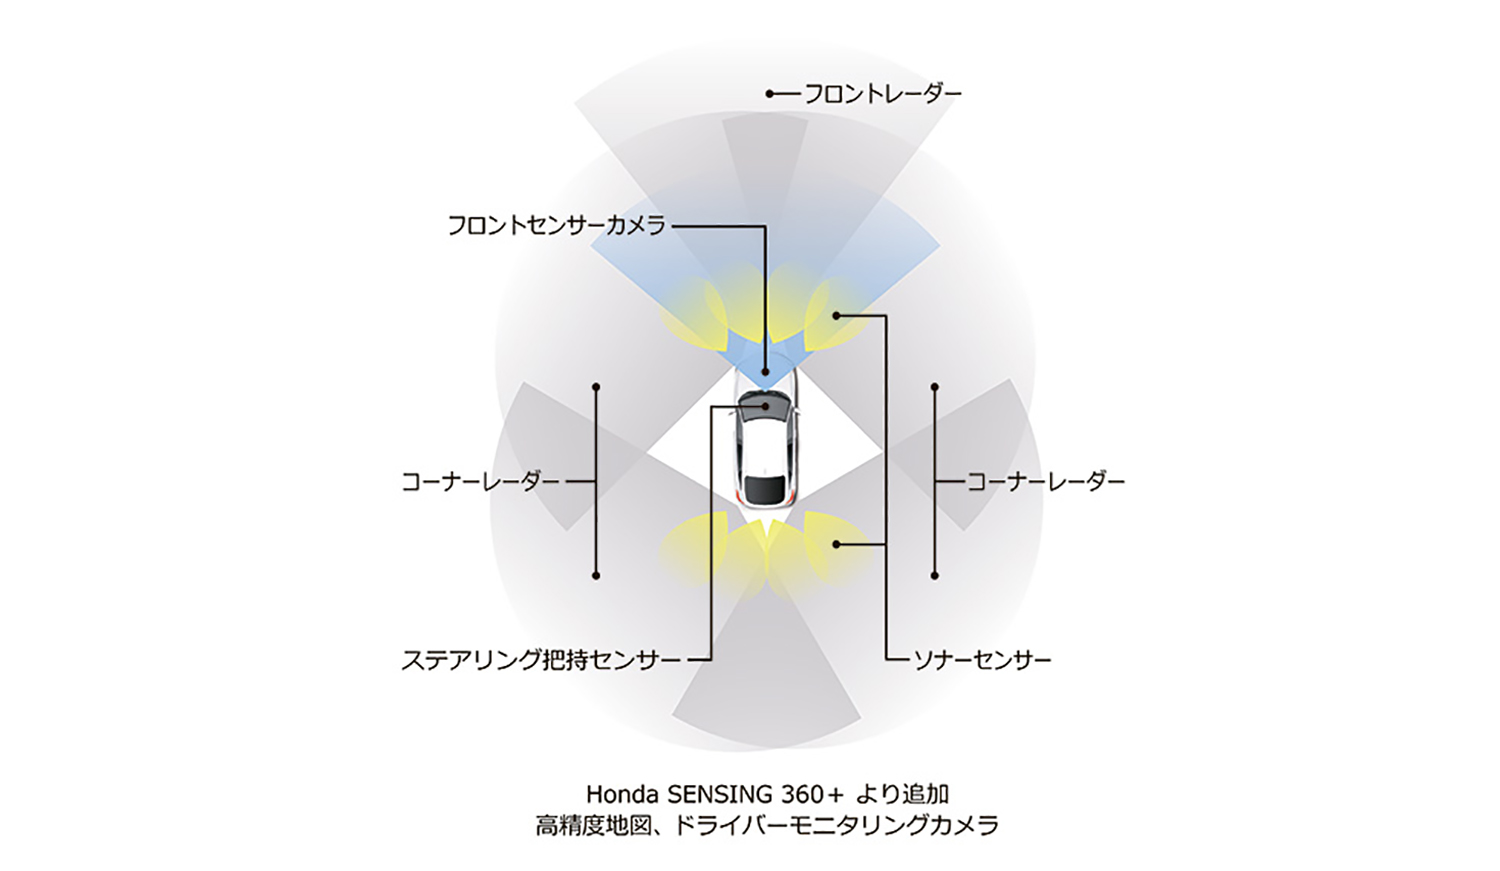 Honda SENSING 360+のイメージ